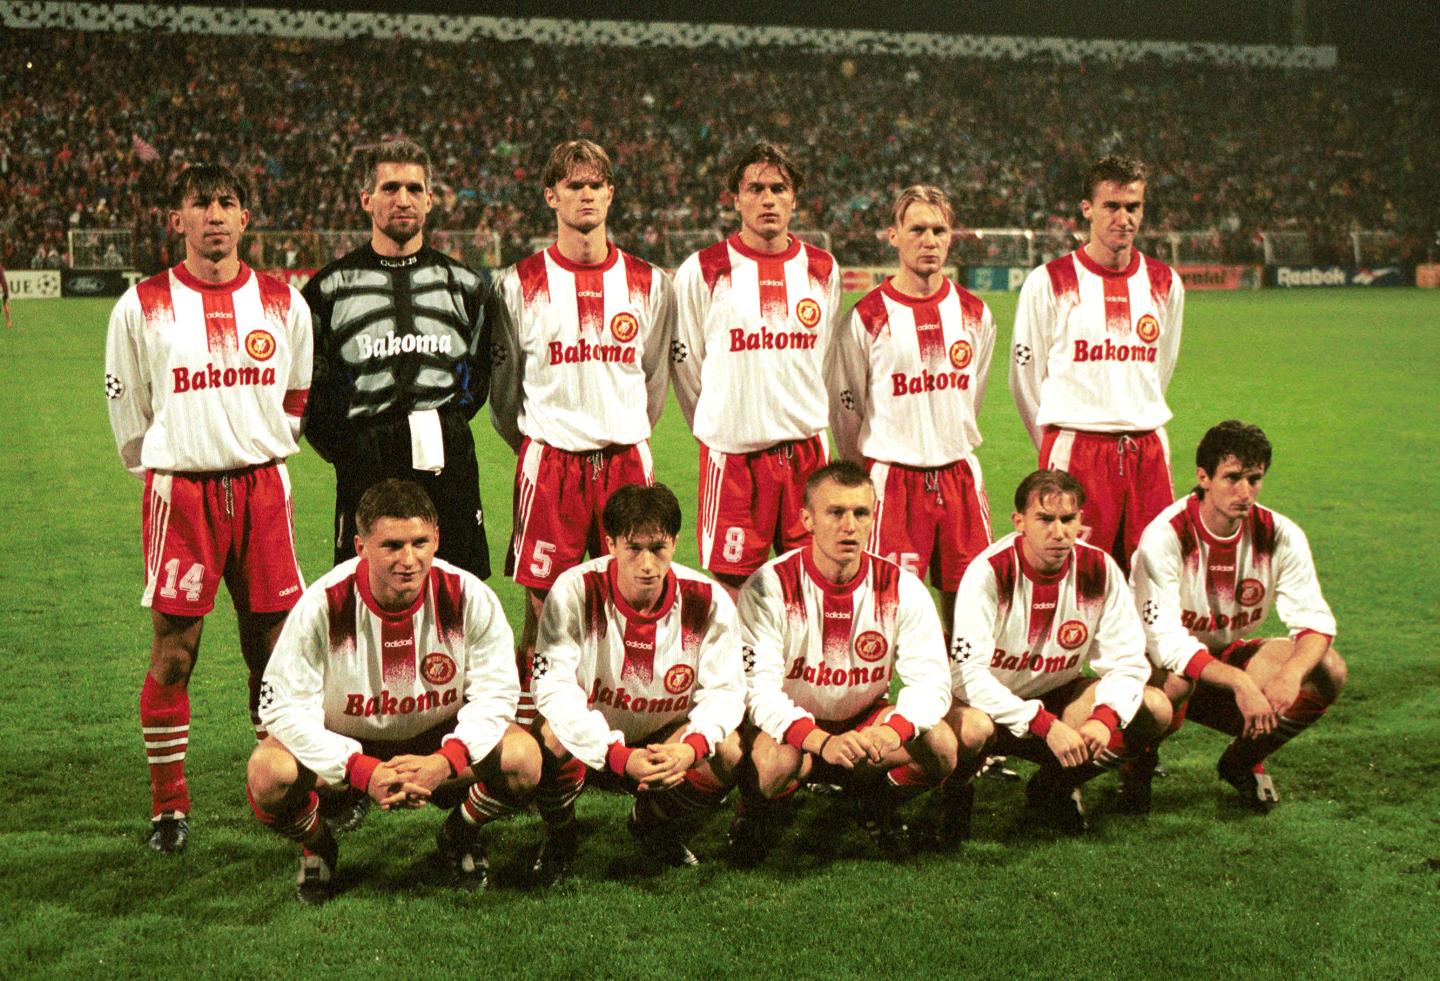 Widzew Łódź - Atlético Madryt 1:4 (25.09.1996)